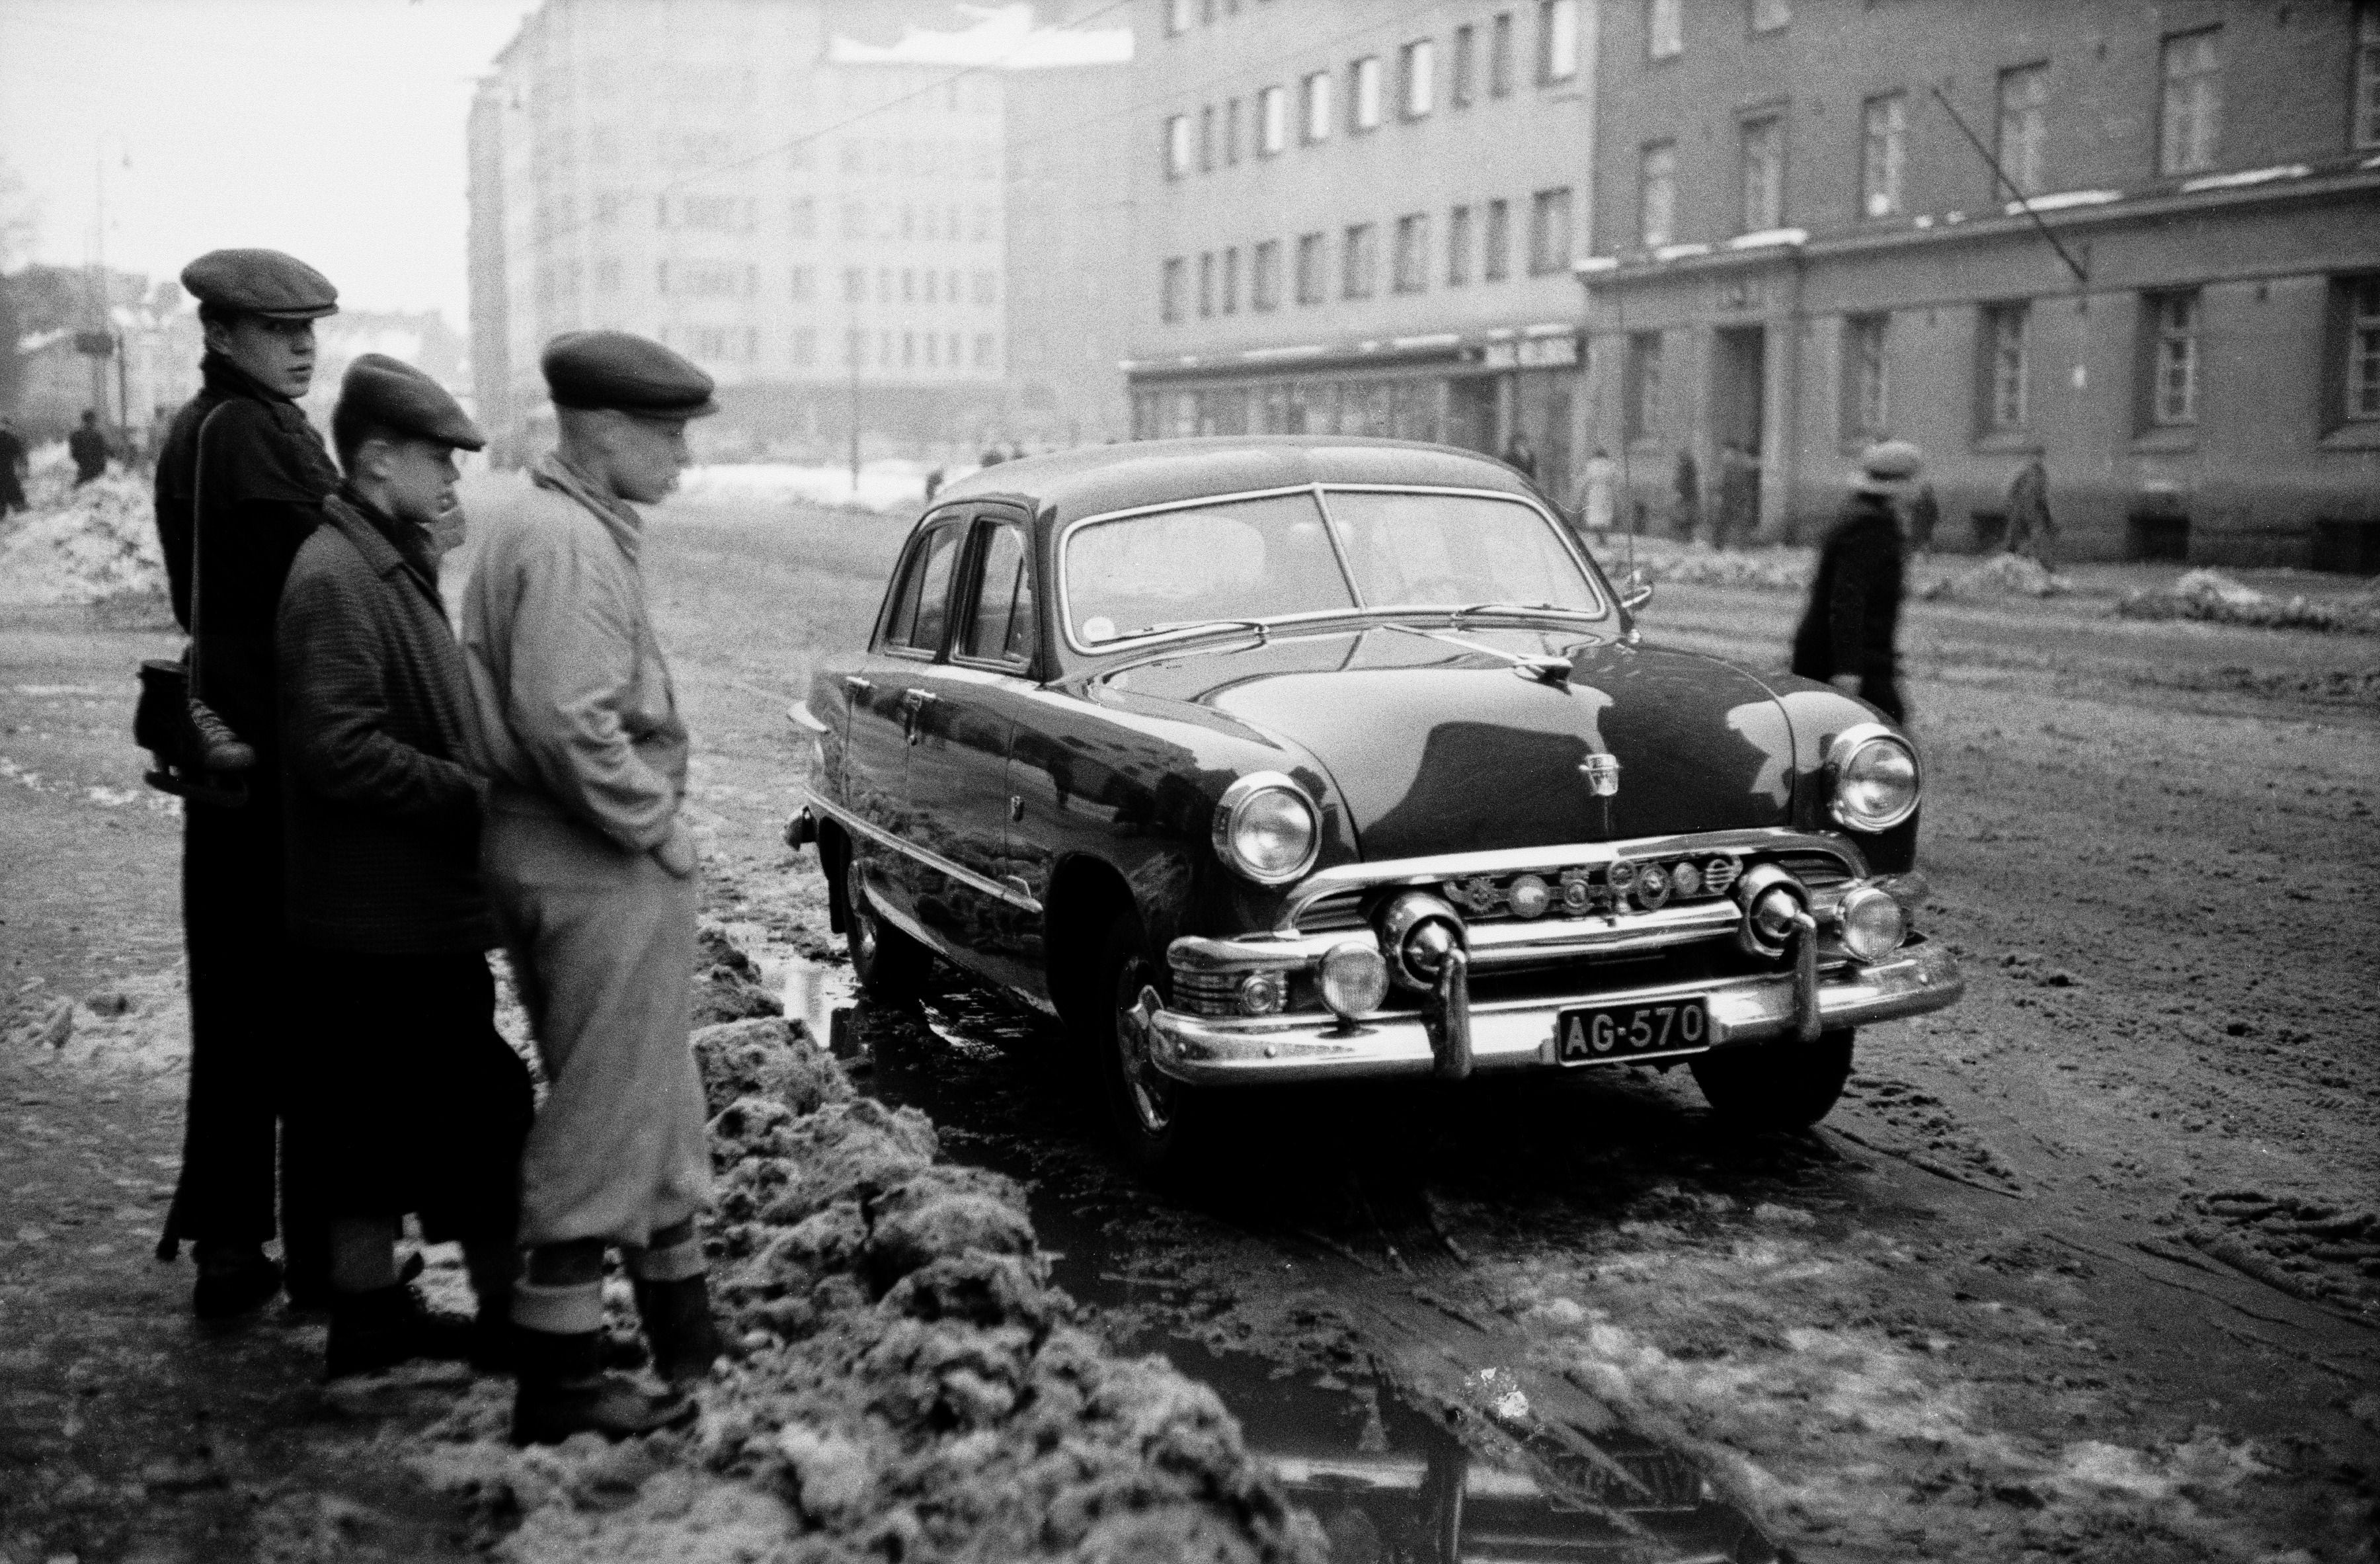 Kolme poikaa katselemassa Helsinginkatu 9:n eteen parkkeerattua autoa (neliovinen Ford sedan, vm. 1951). Taustalla Harjutori sekä Helsinginkatu 6, 10.